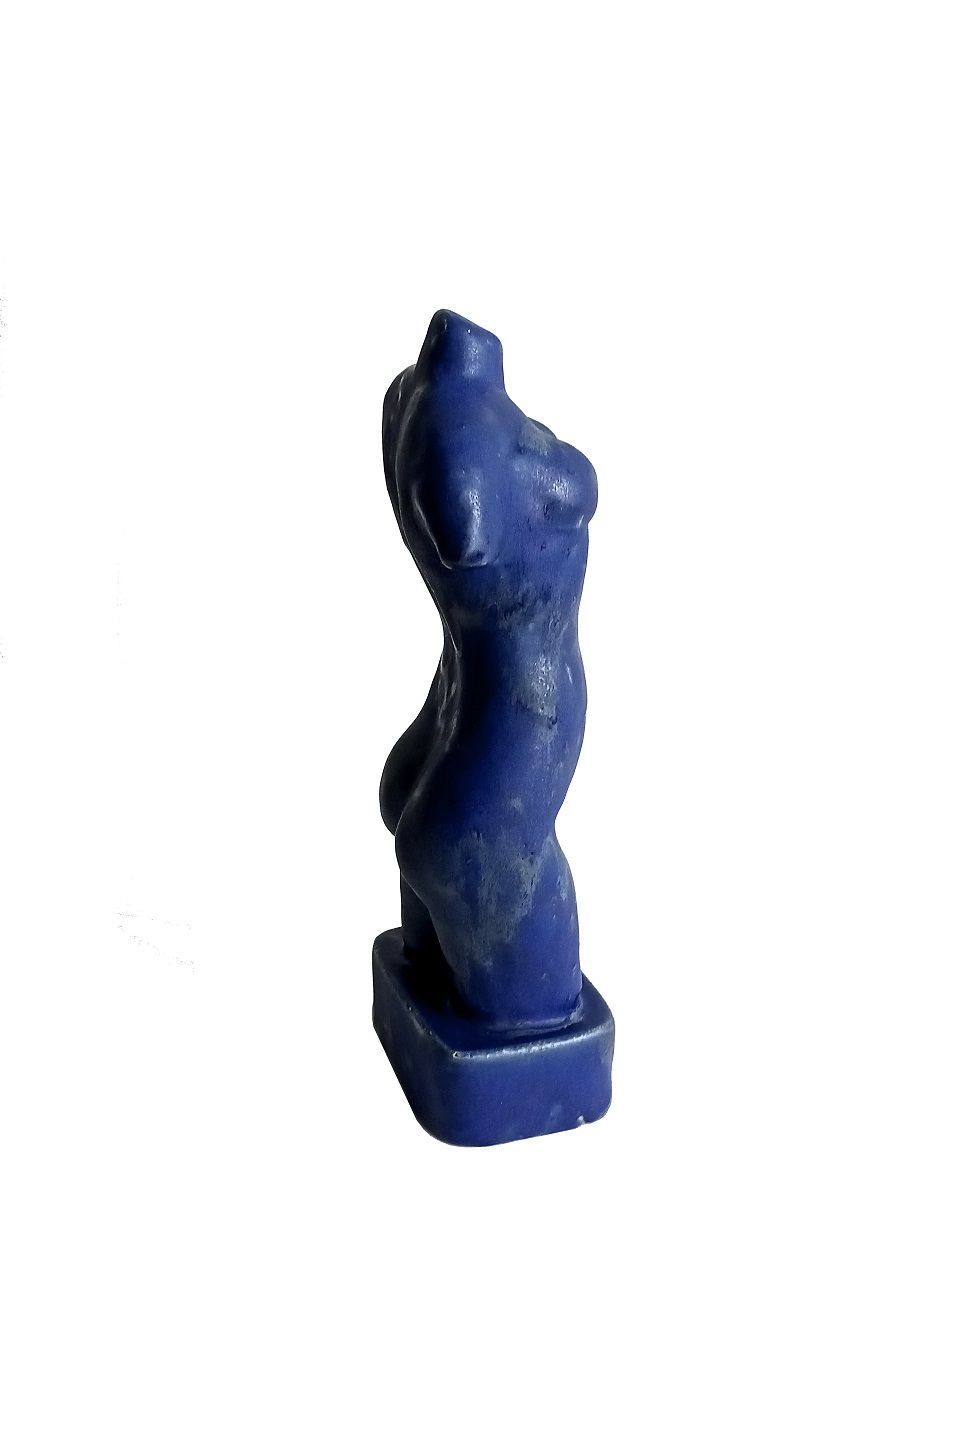 Скульптура Синий торс